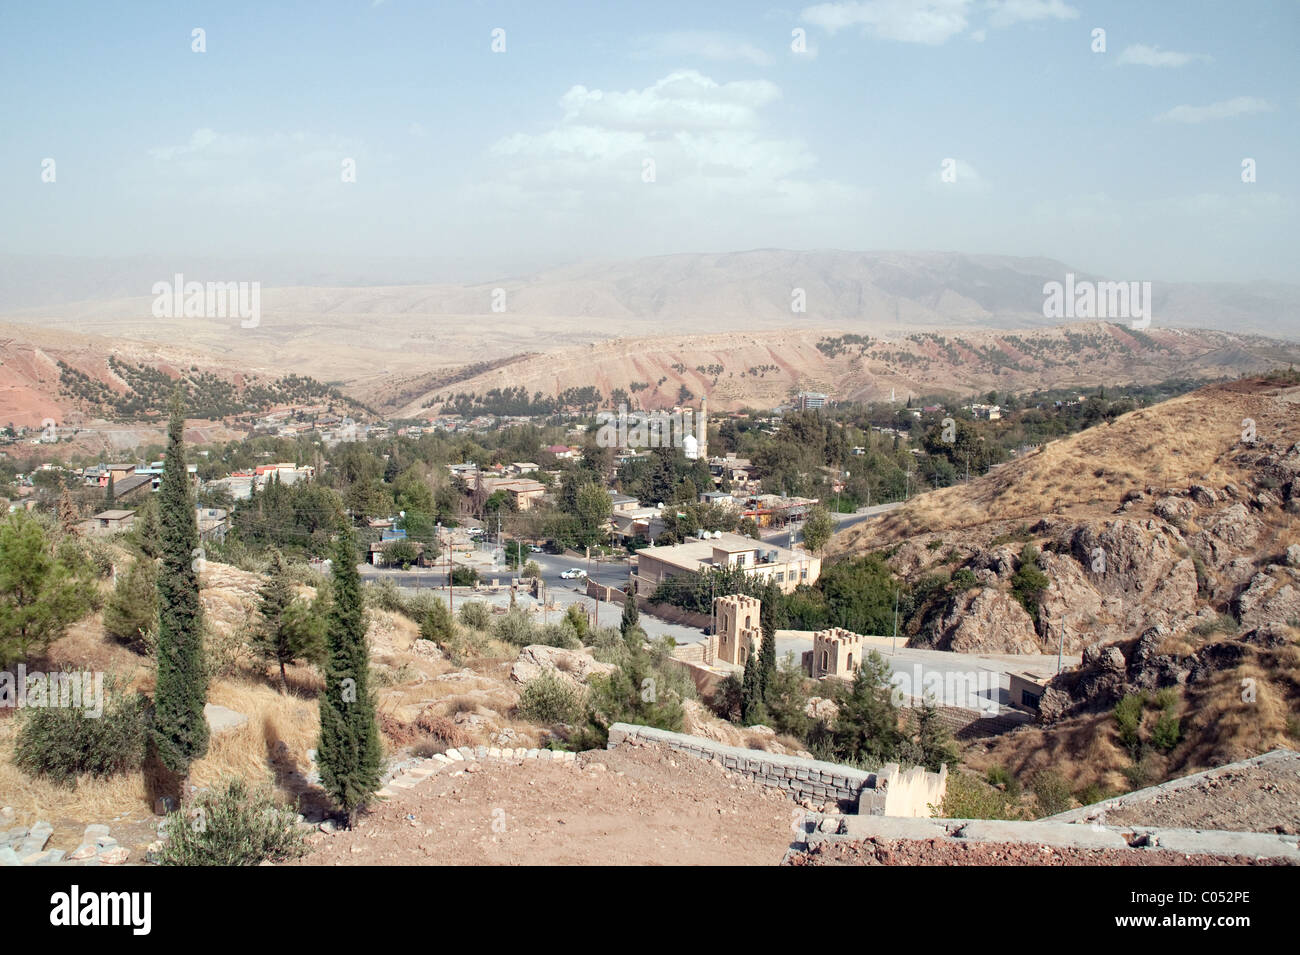 La città mista siriacca e curda di Shaqlawa nelle montagne di Zagros e nella regione Kurdistan dell'Iraq settentrionale. Foto Stock